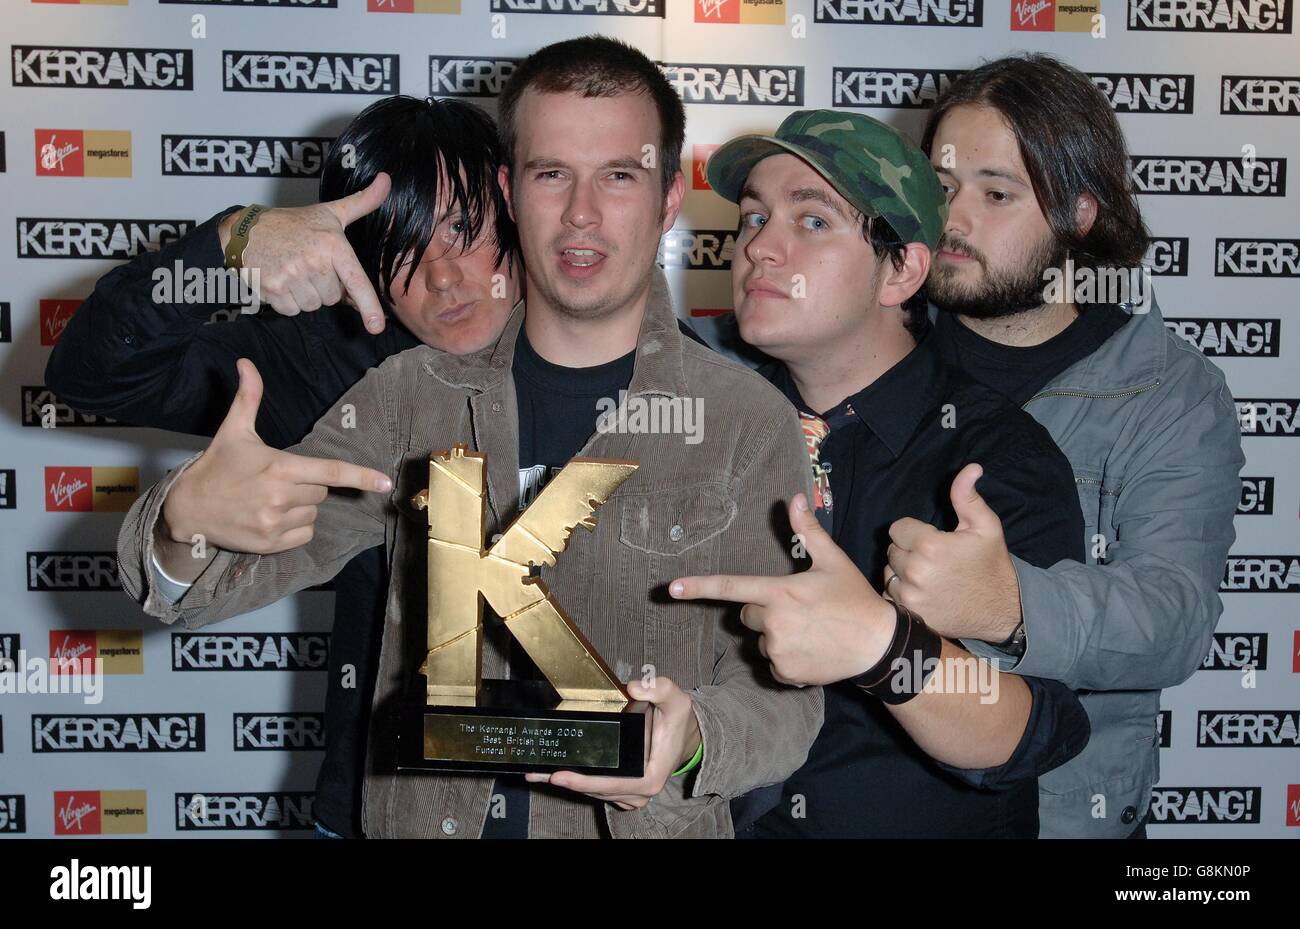 Begräbnis für einen Freund zeigen ihre Auszeichnung als beste britische Band bei den Kerrang! Awards, Donnerstag, 25. August 2005, statt in der Brauerei im Zentrum von London. PRESSEVERBAND Foto. Bildnachweis sollte lauten: Steve Parsons/PA Stockfoto